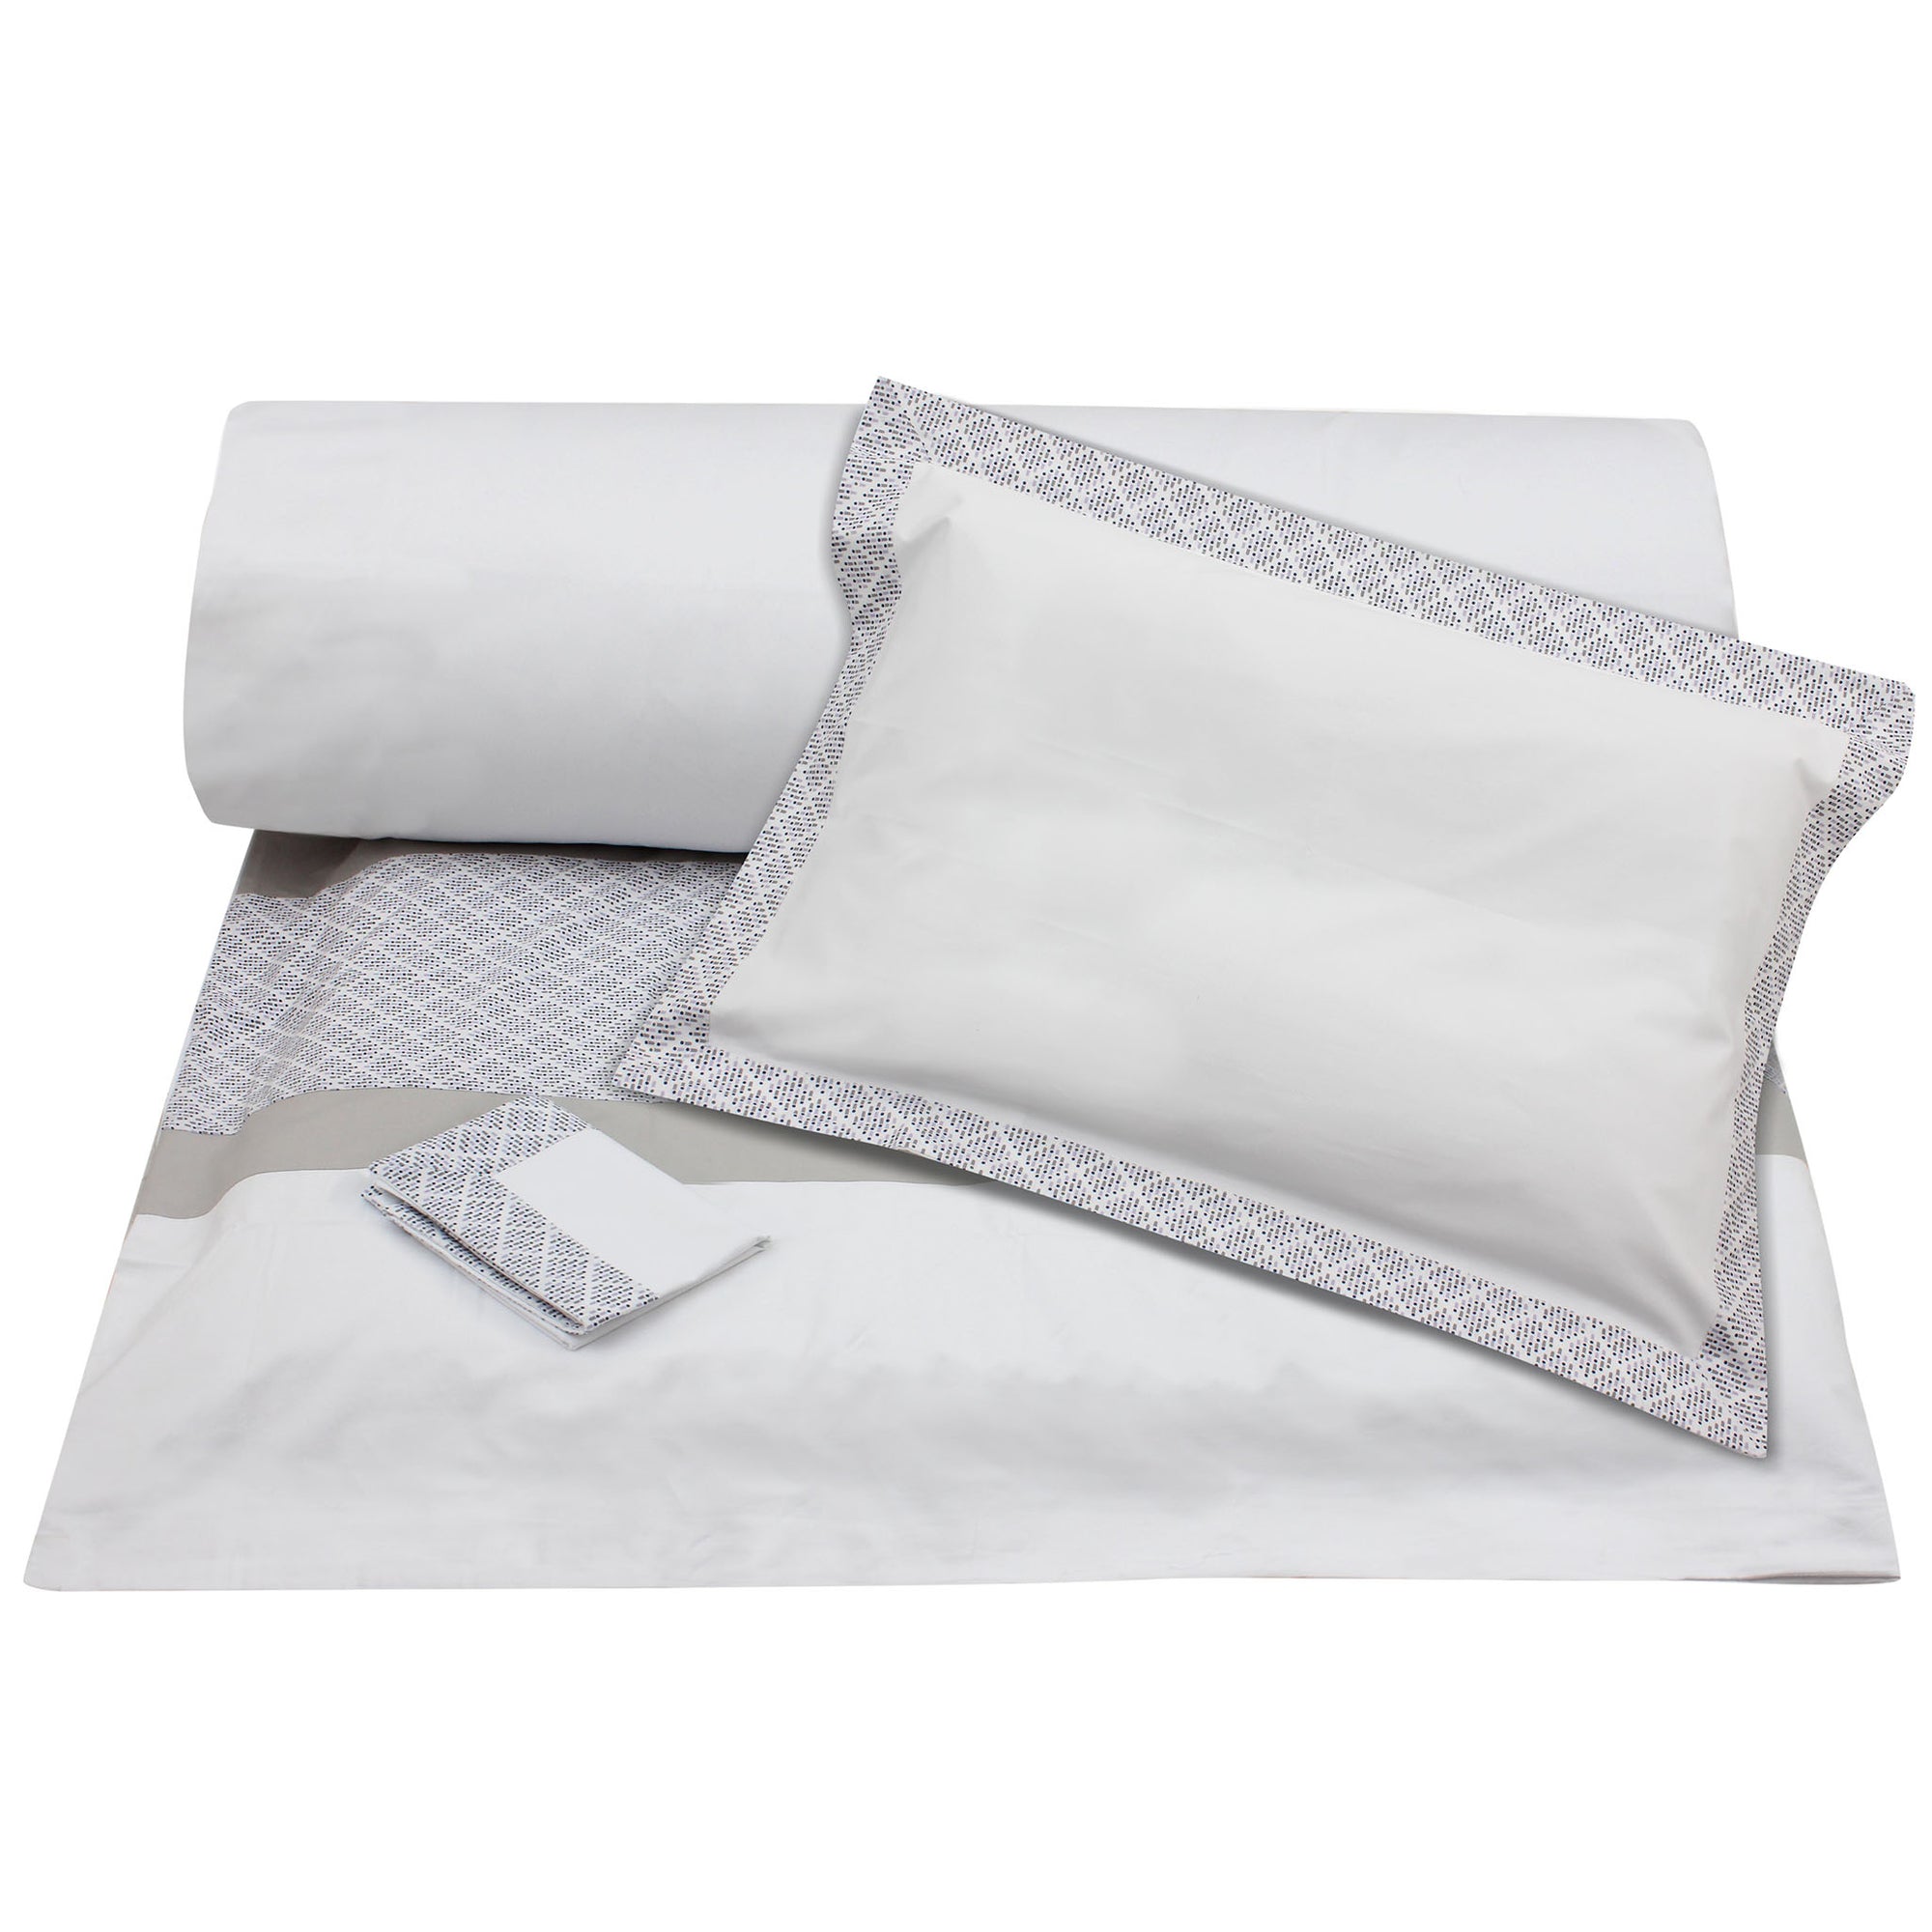 Match Sticks Duvet + Pillowcases